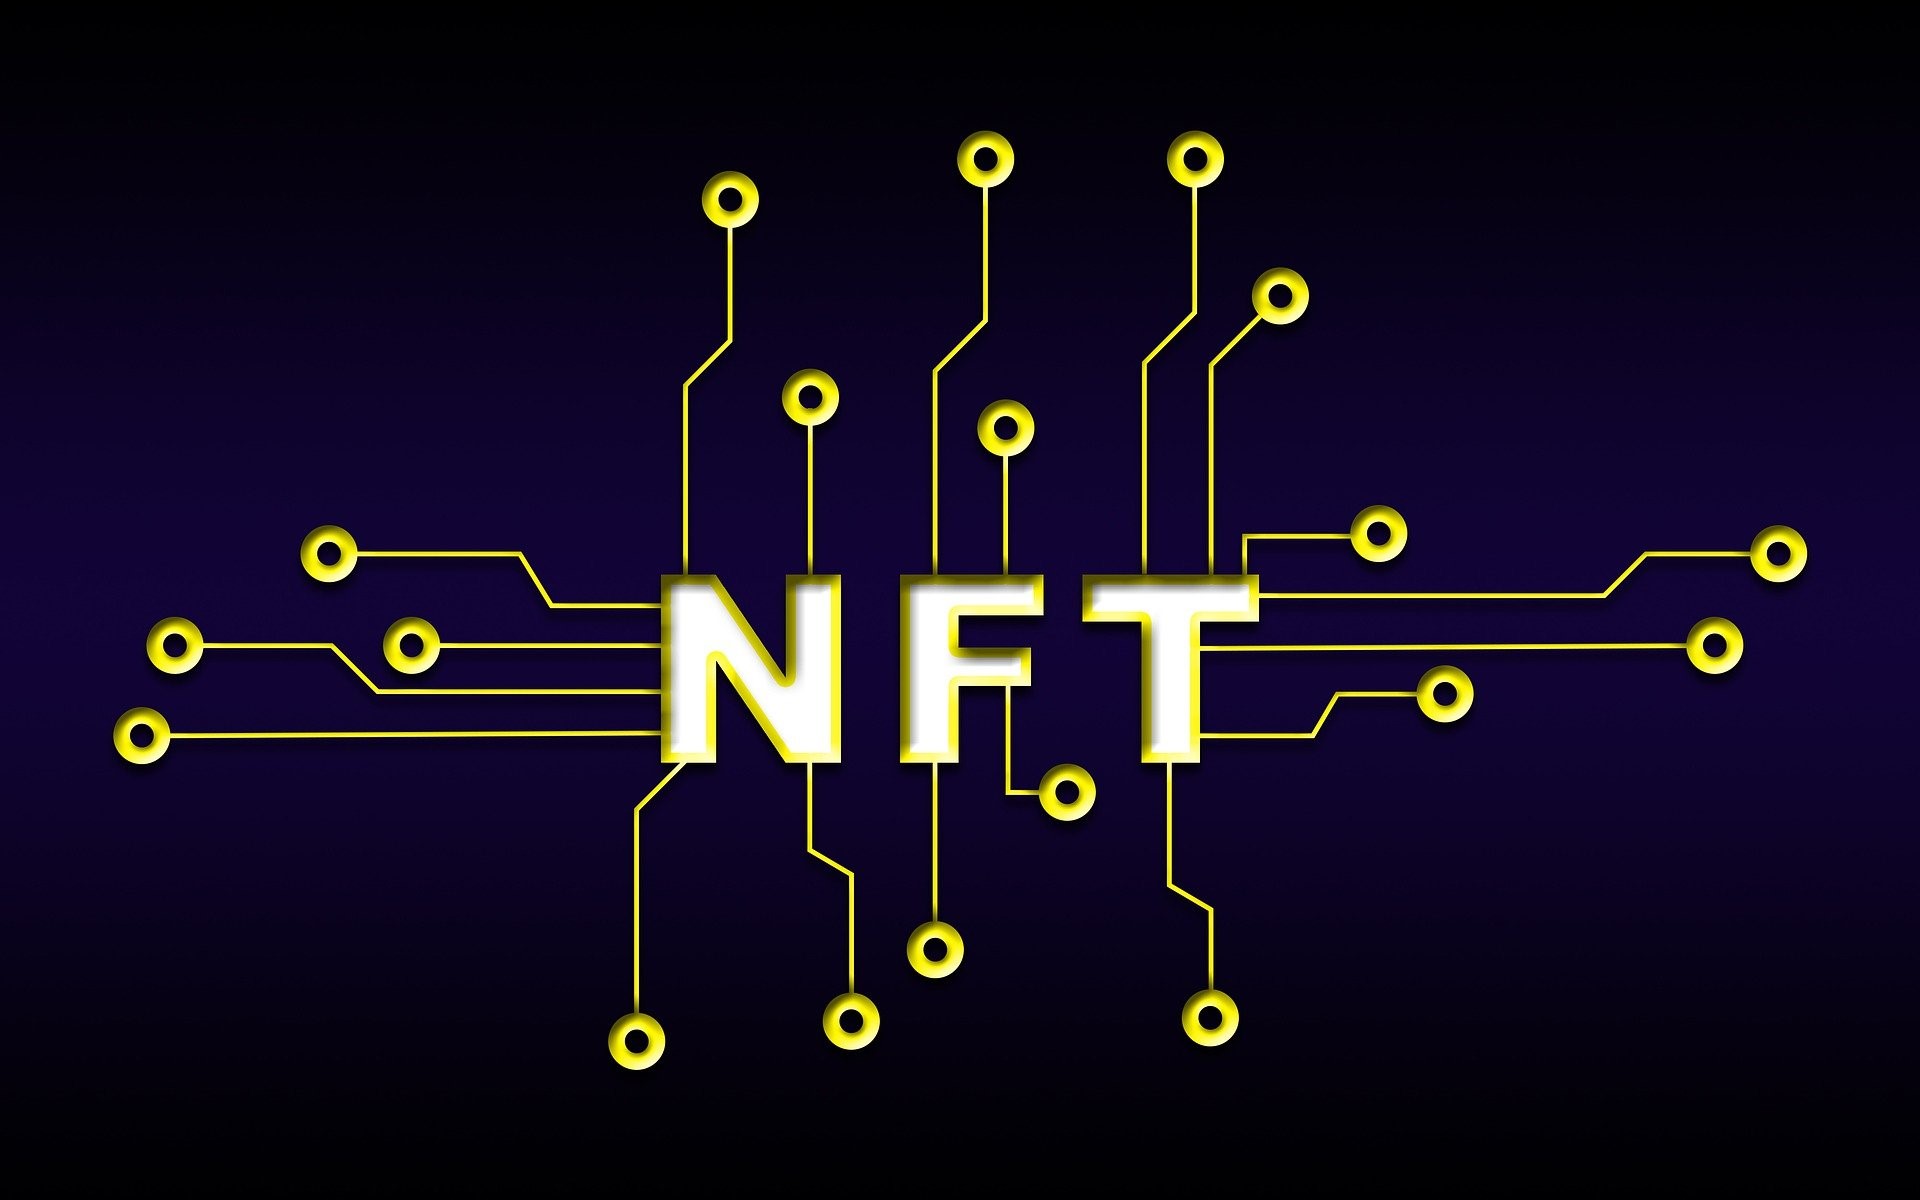 NFT smart contracts audit